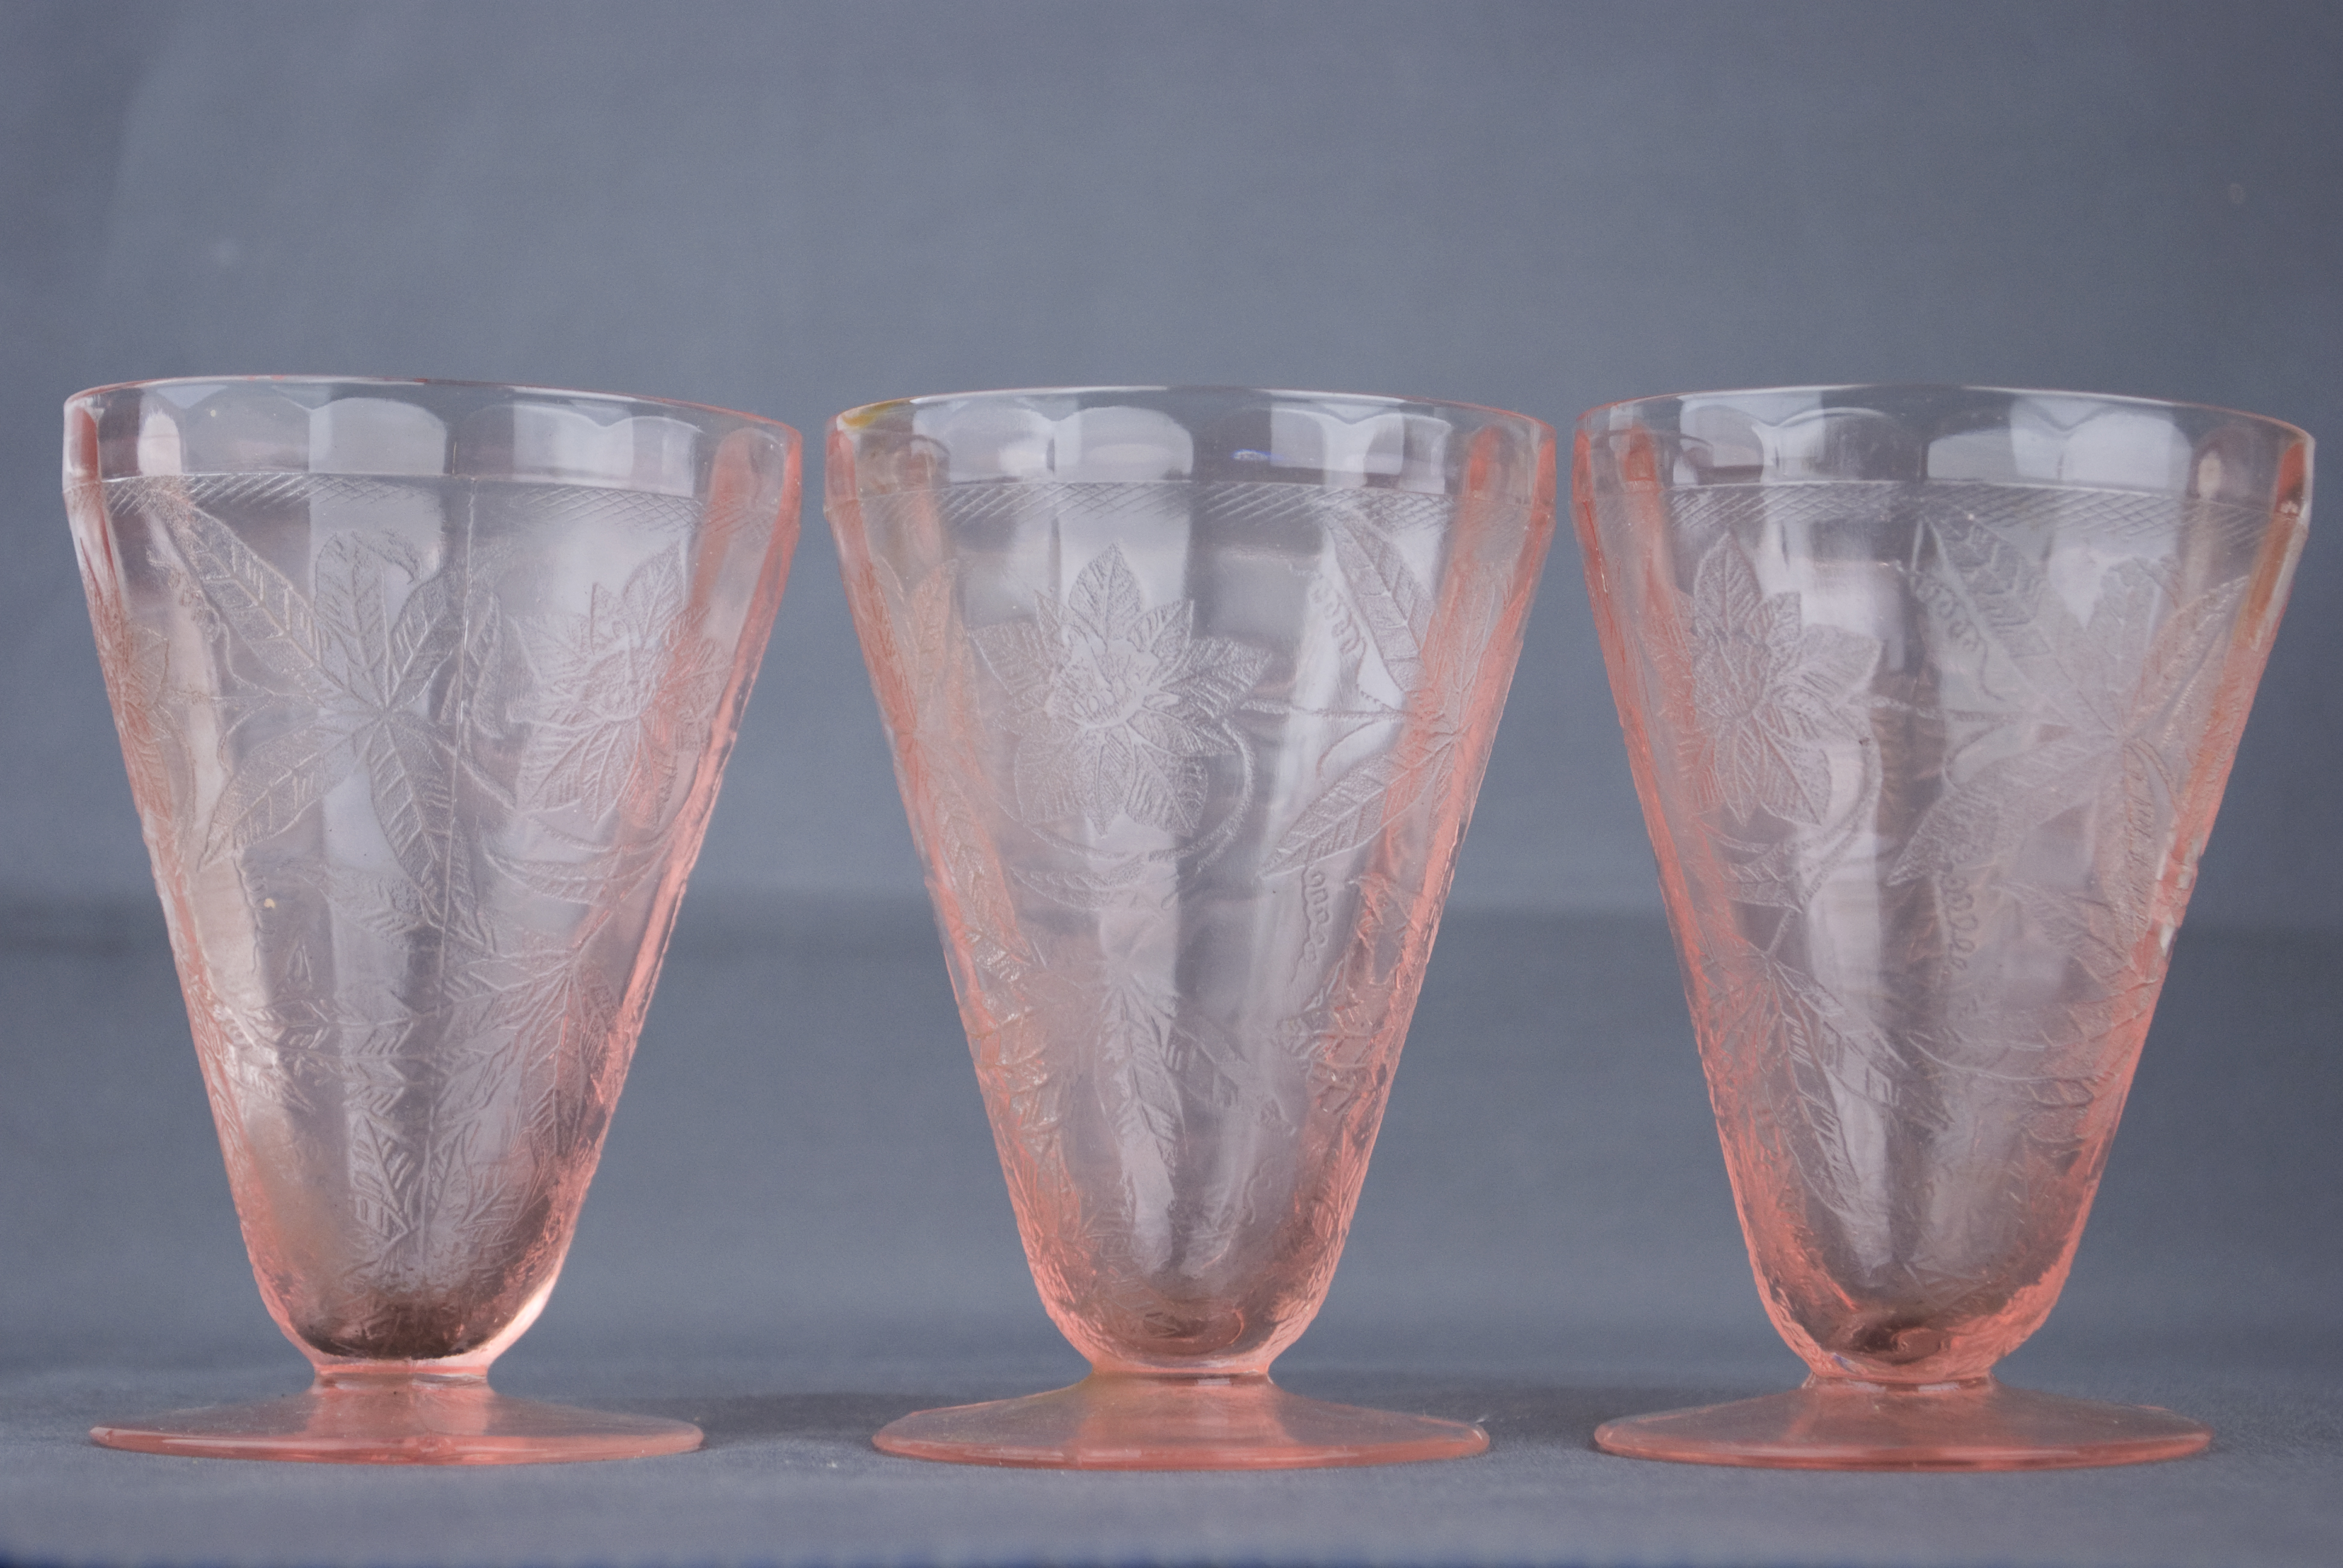 Variants for Pink Depression Glass.